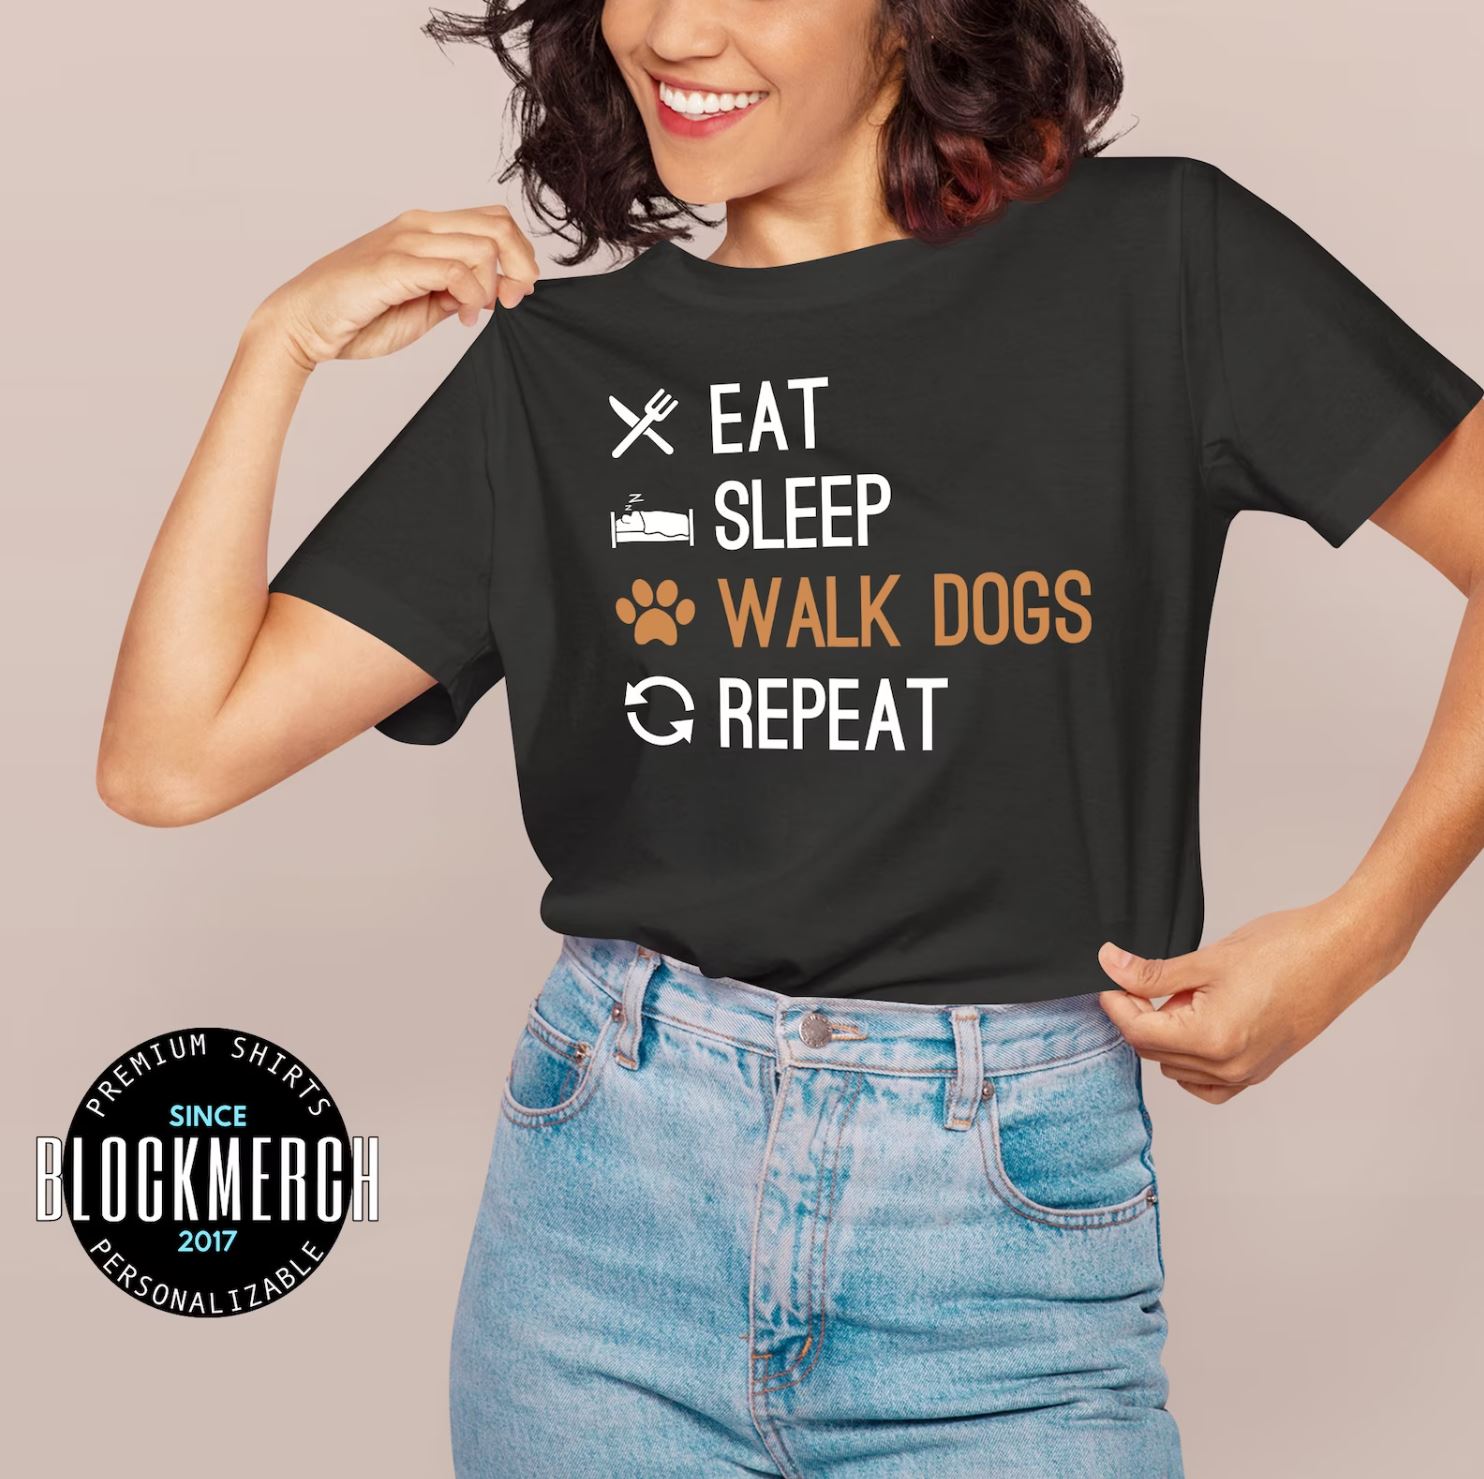 Blockmerch Walk Dogs T-Shirt